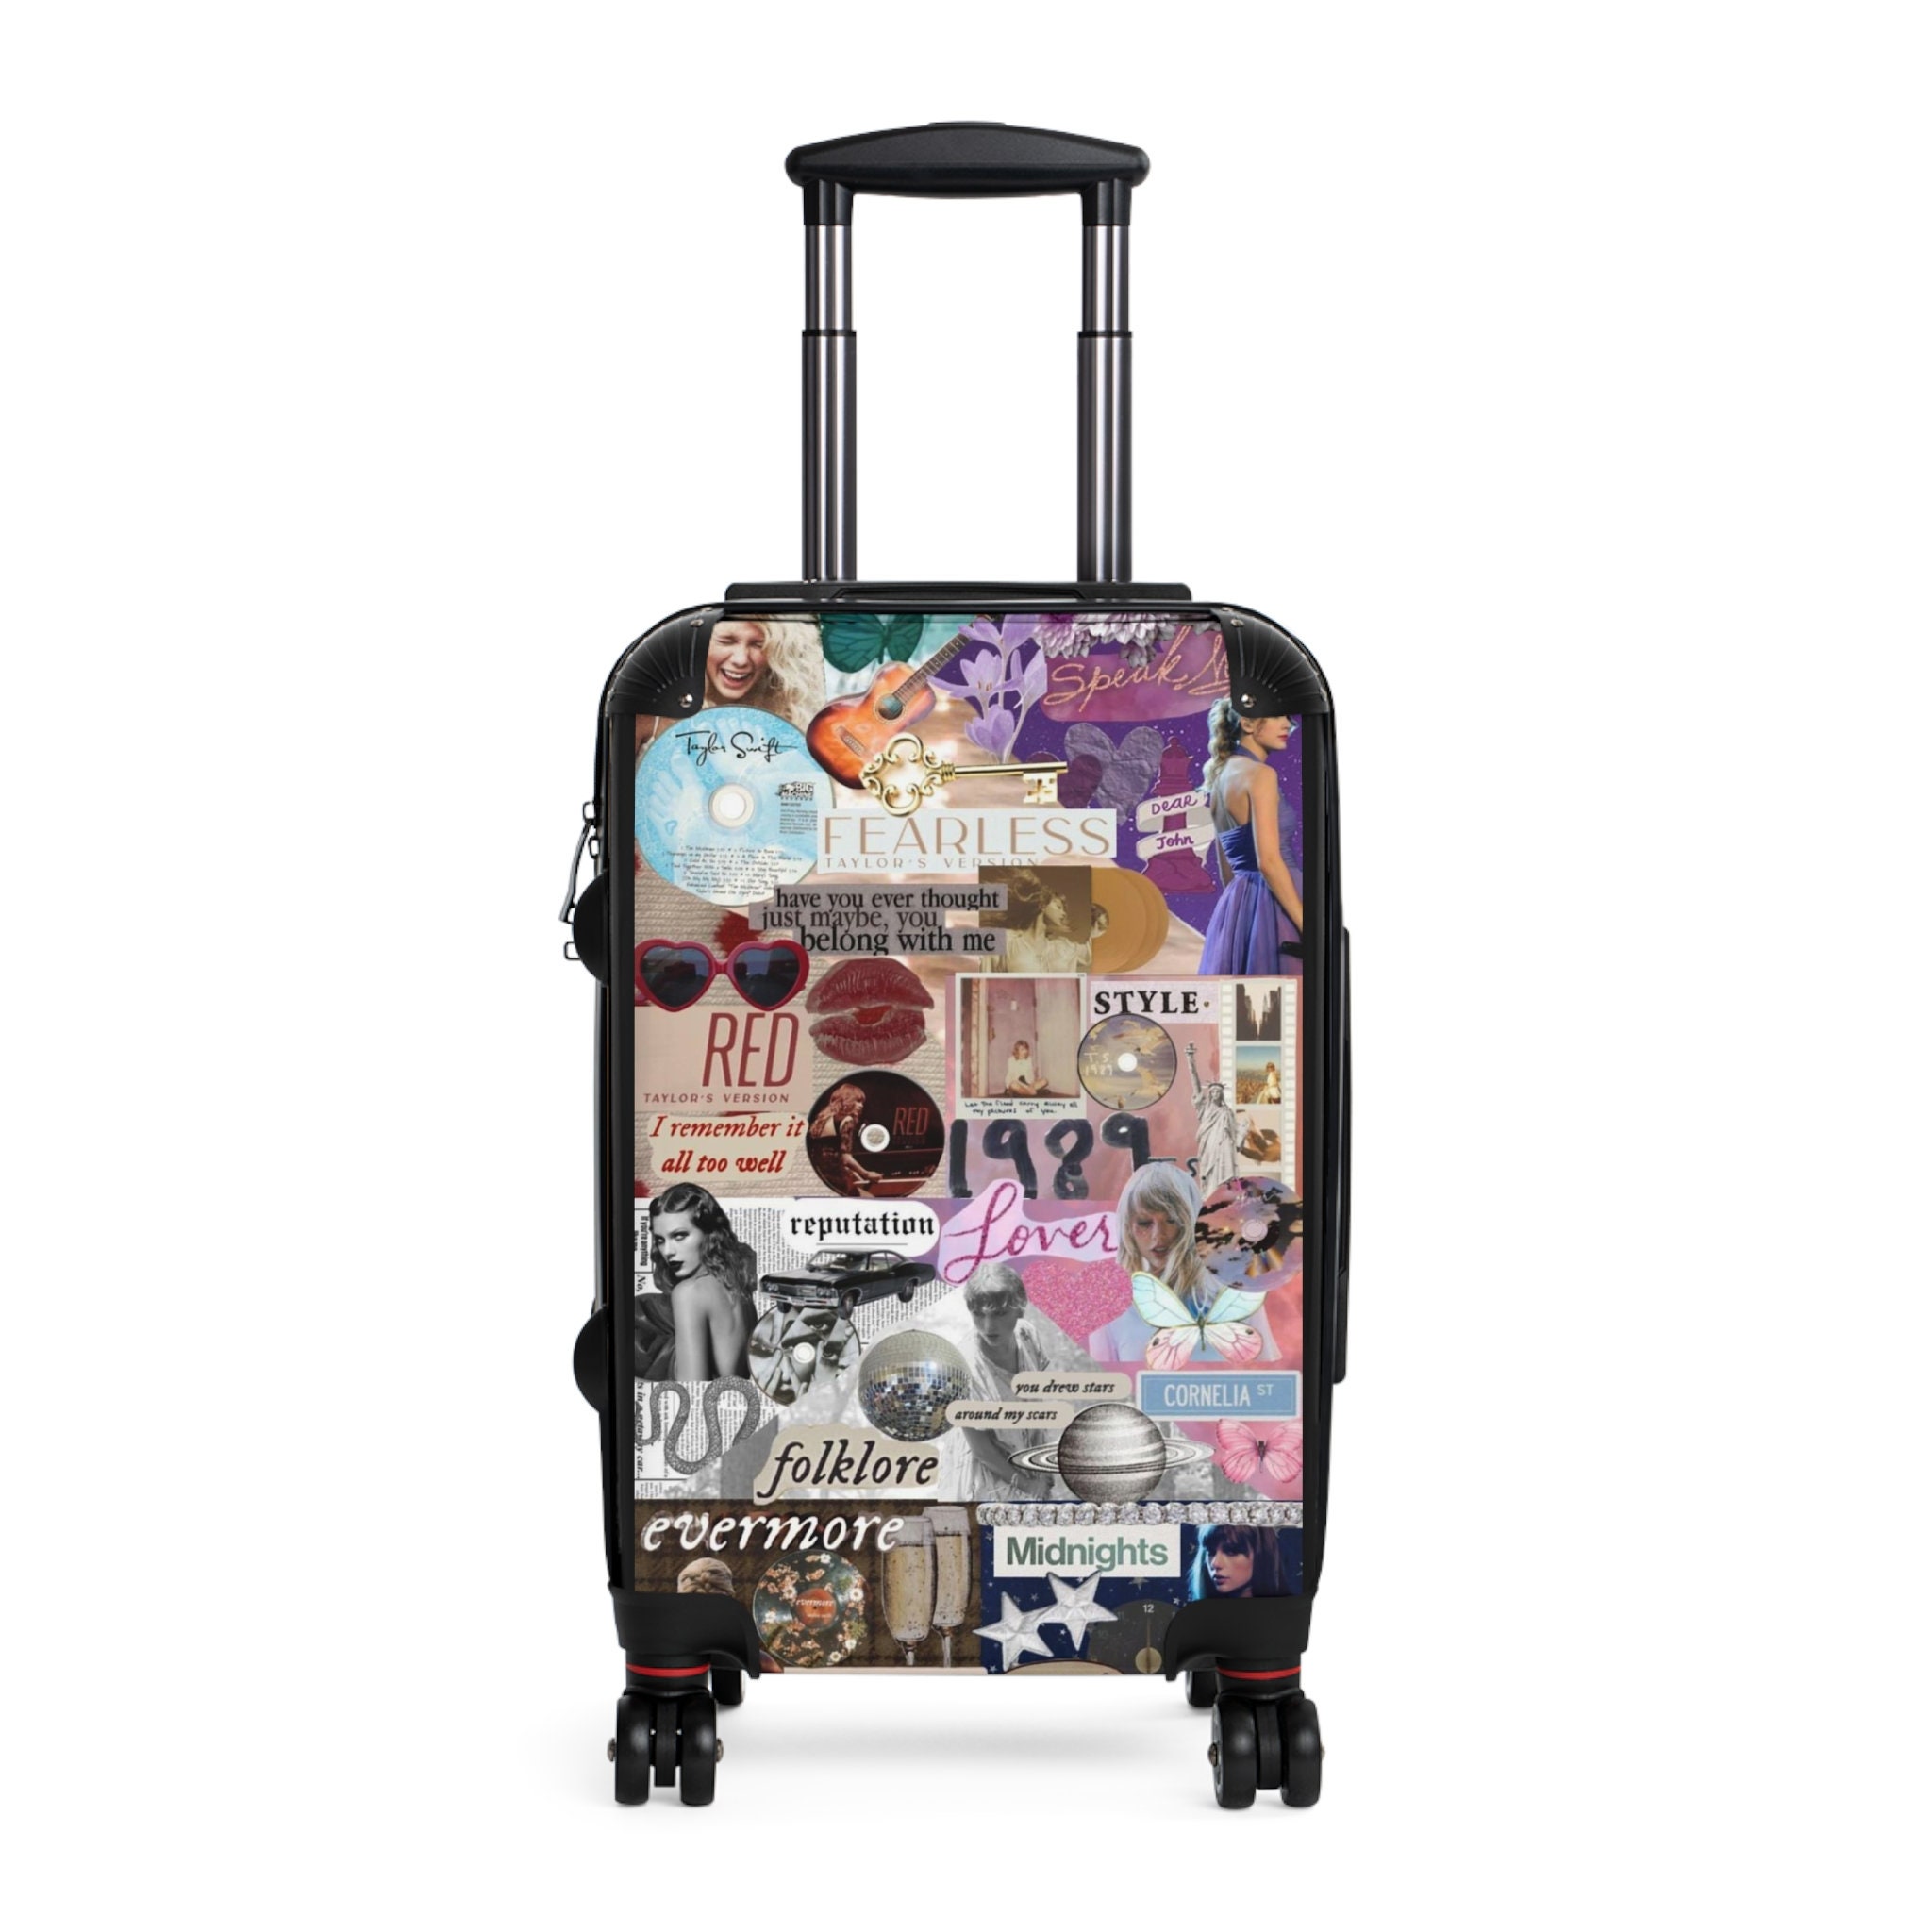 Taylor Eras Albums Suitcase - Taylor merch